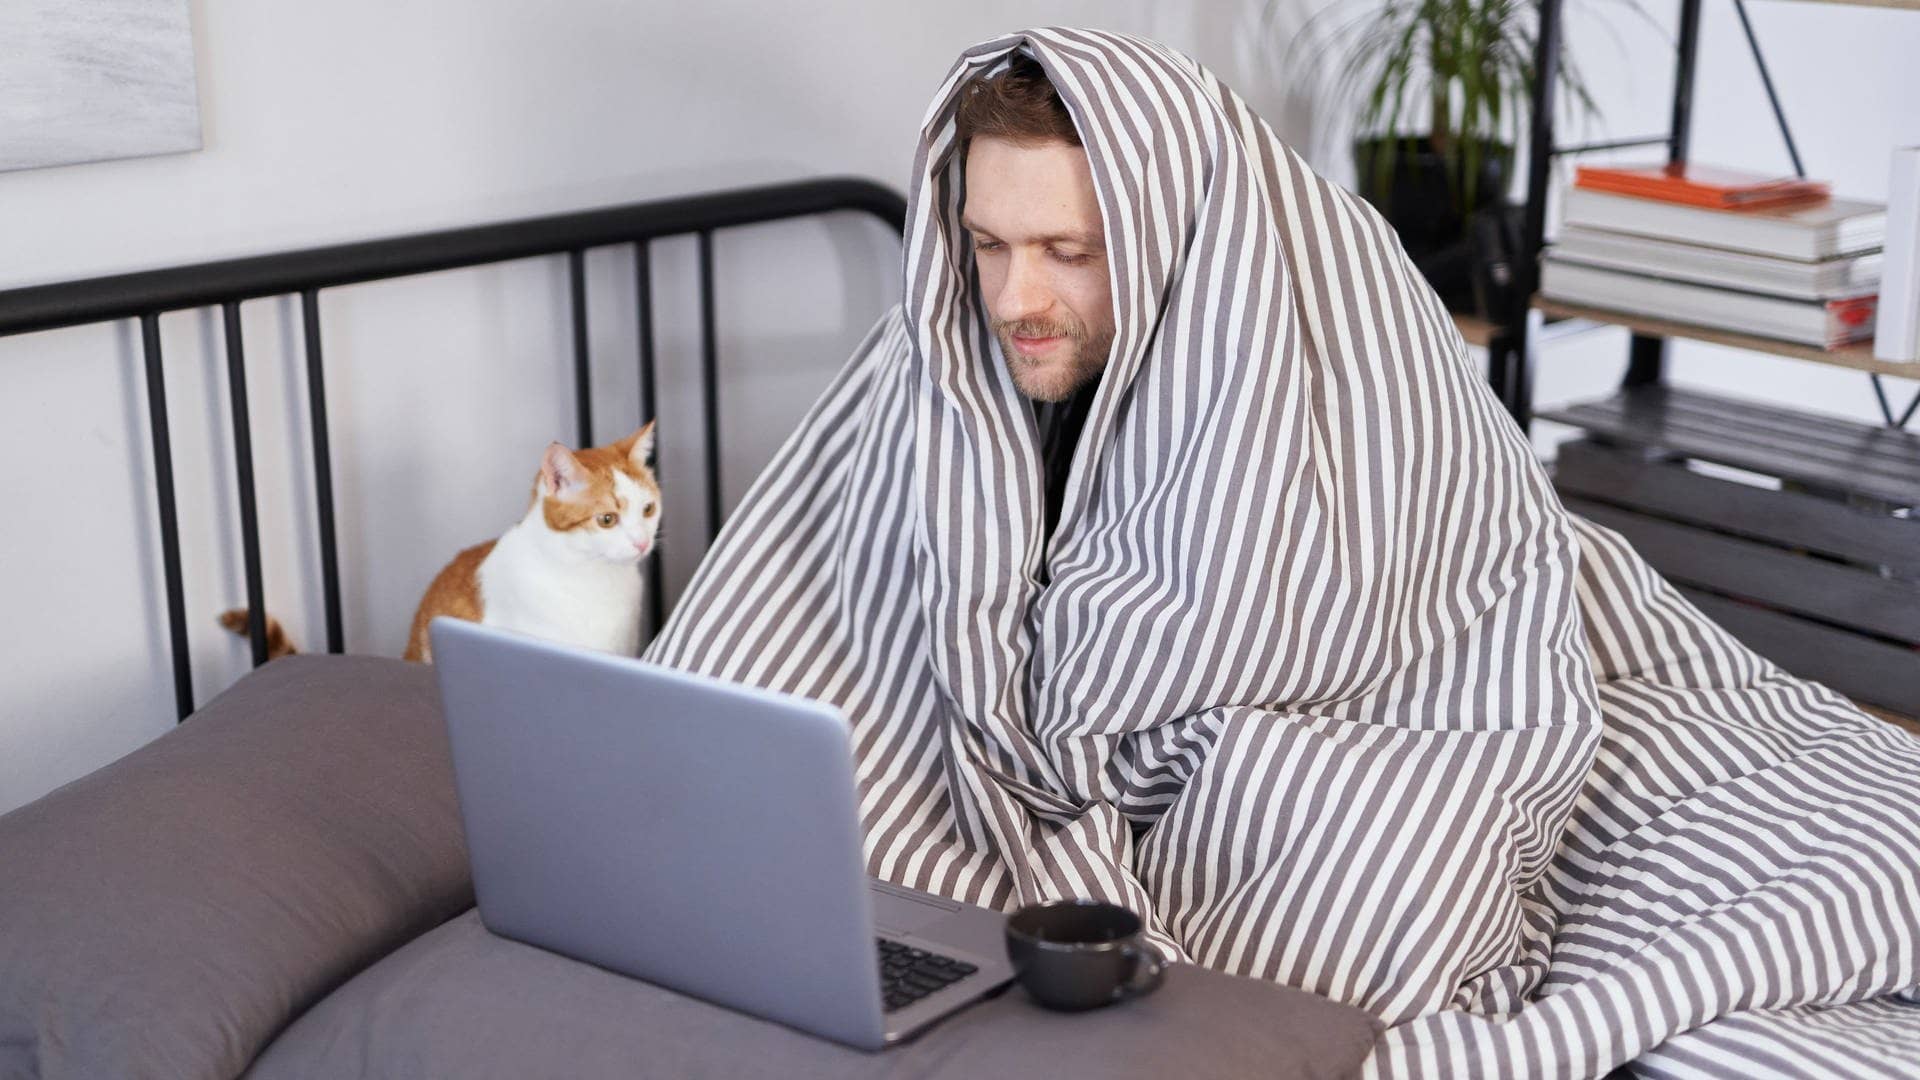 Junger Mann sieht krank aus, vielleicht hat er Corona. Er hat eine Decke über den Kopf gezogen und sitzt zu Hause auf dem Bett. Er scheient trotz Krankheit zu arbeiten, hat ein Laptop vor sich. Neben ihm sitzt eine Katze.